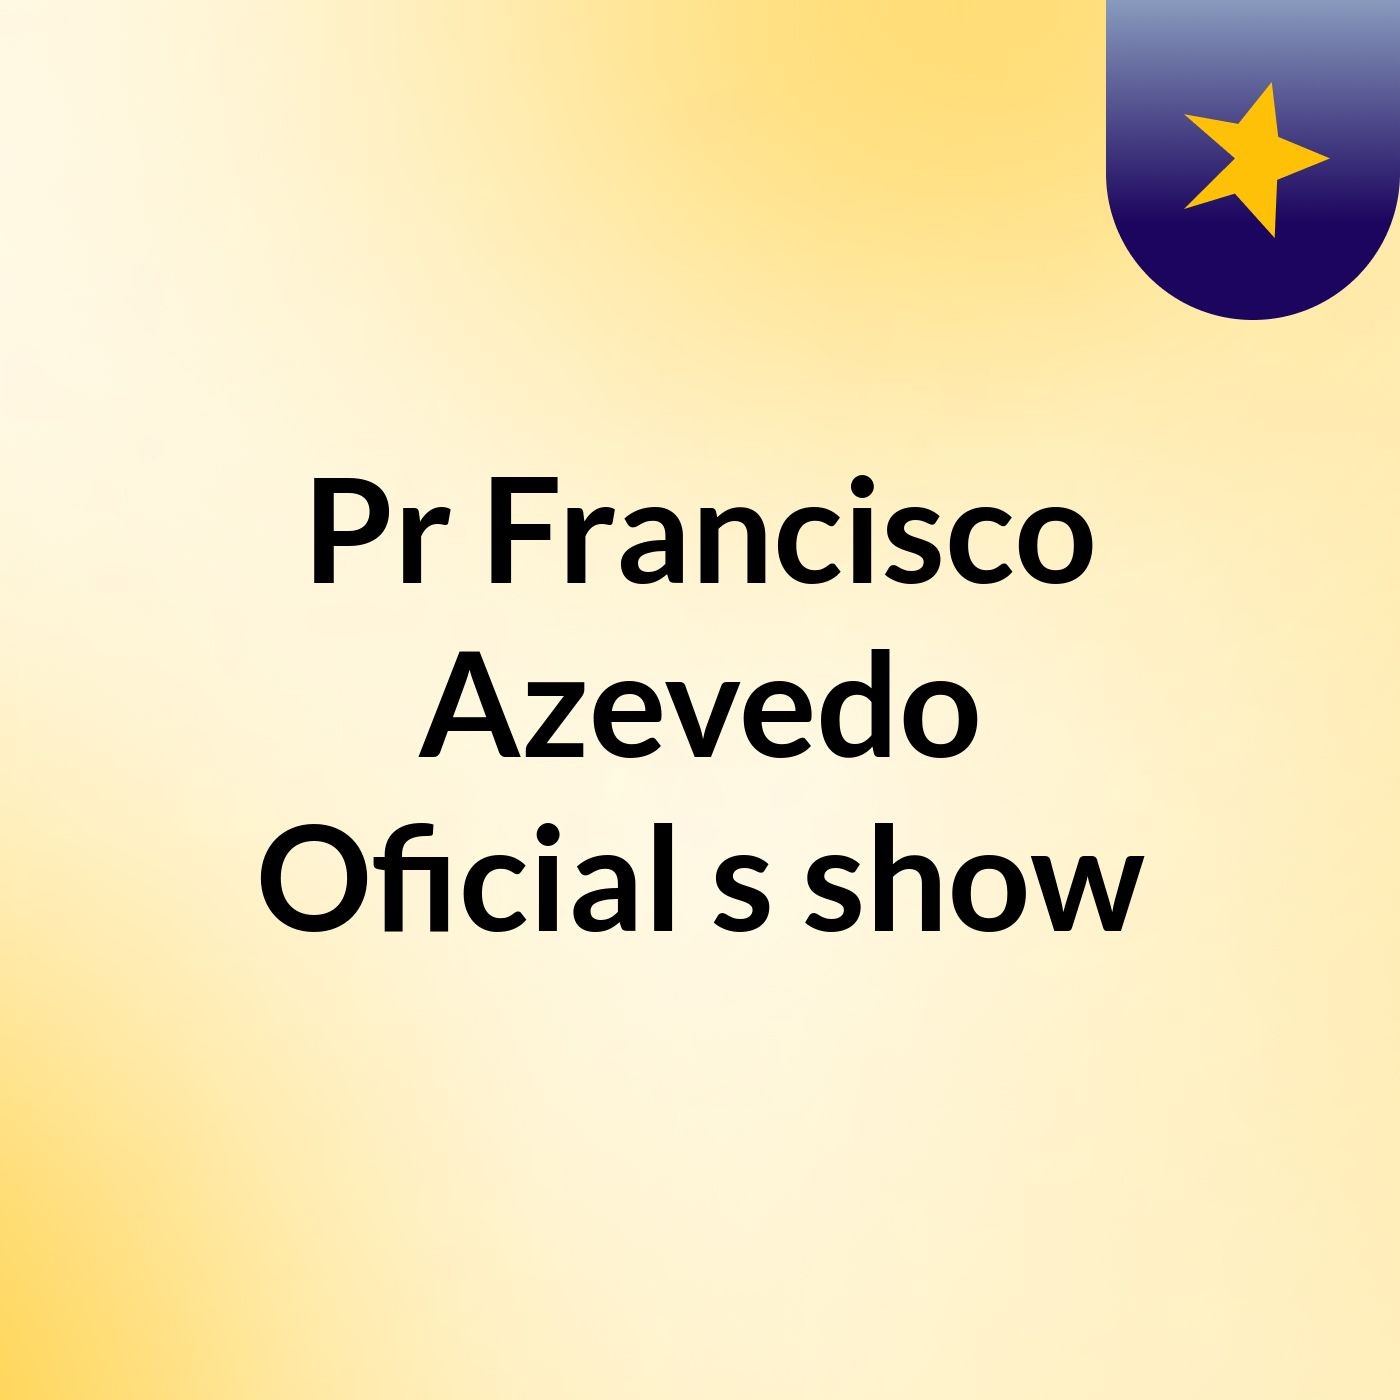 Pr Francisco Azevedo Oficial's show